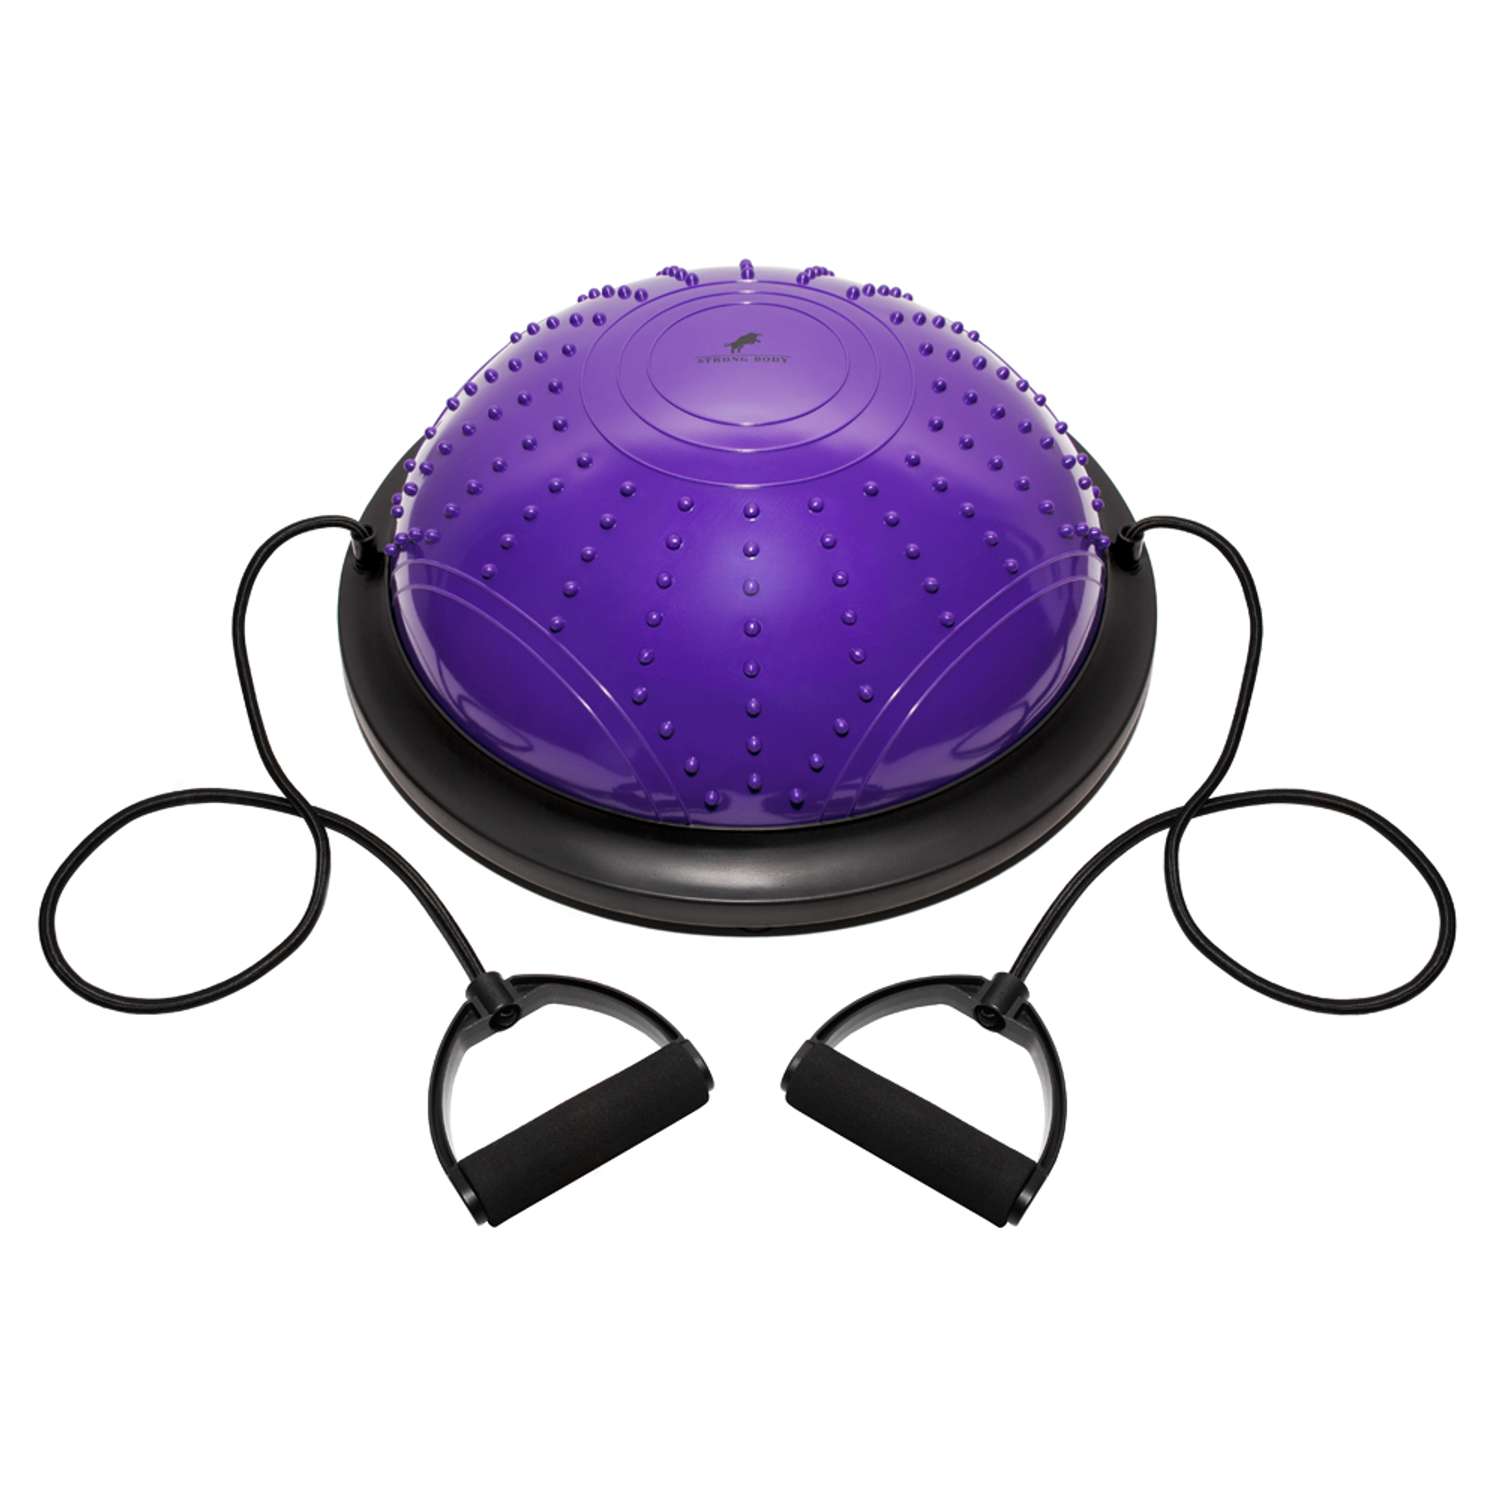 Балансировочная полусфера BOSU STRONG BODY в комплекте со съемными эспандерами фиолетовая - фото 3